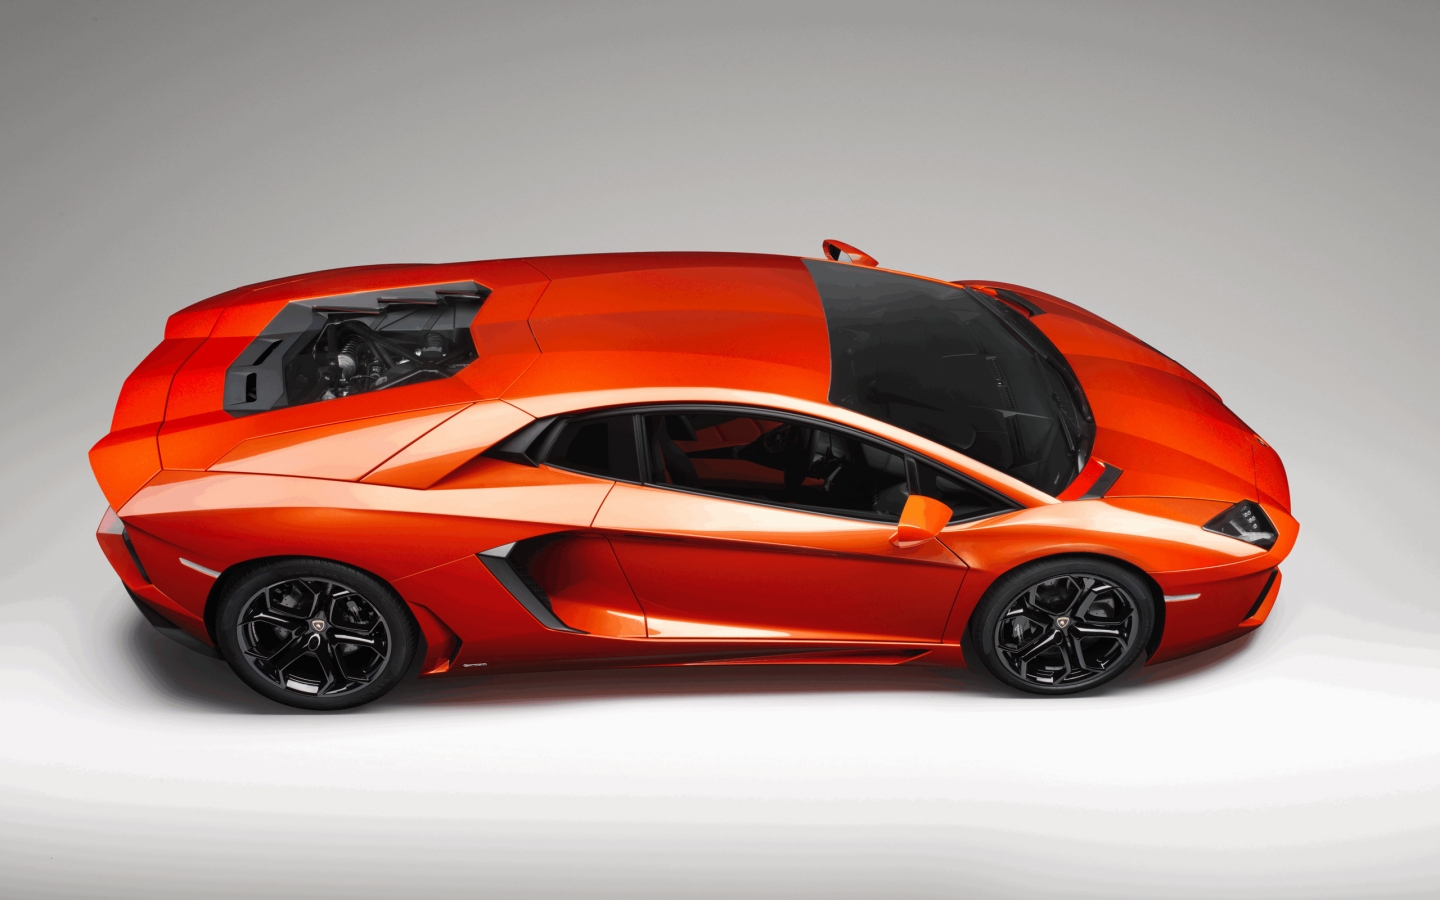 Lamborghini Aventador Studio for 1440 x 900 widescreen resolution